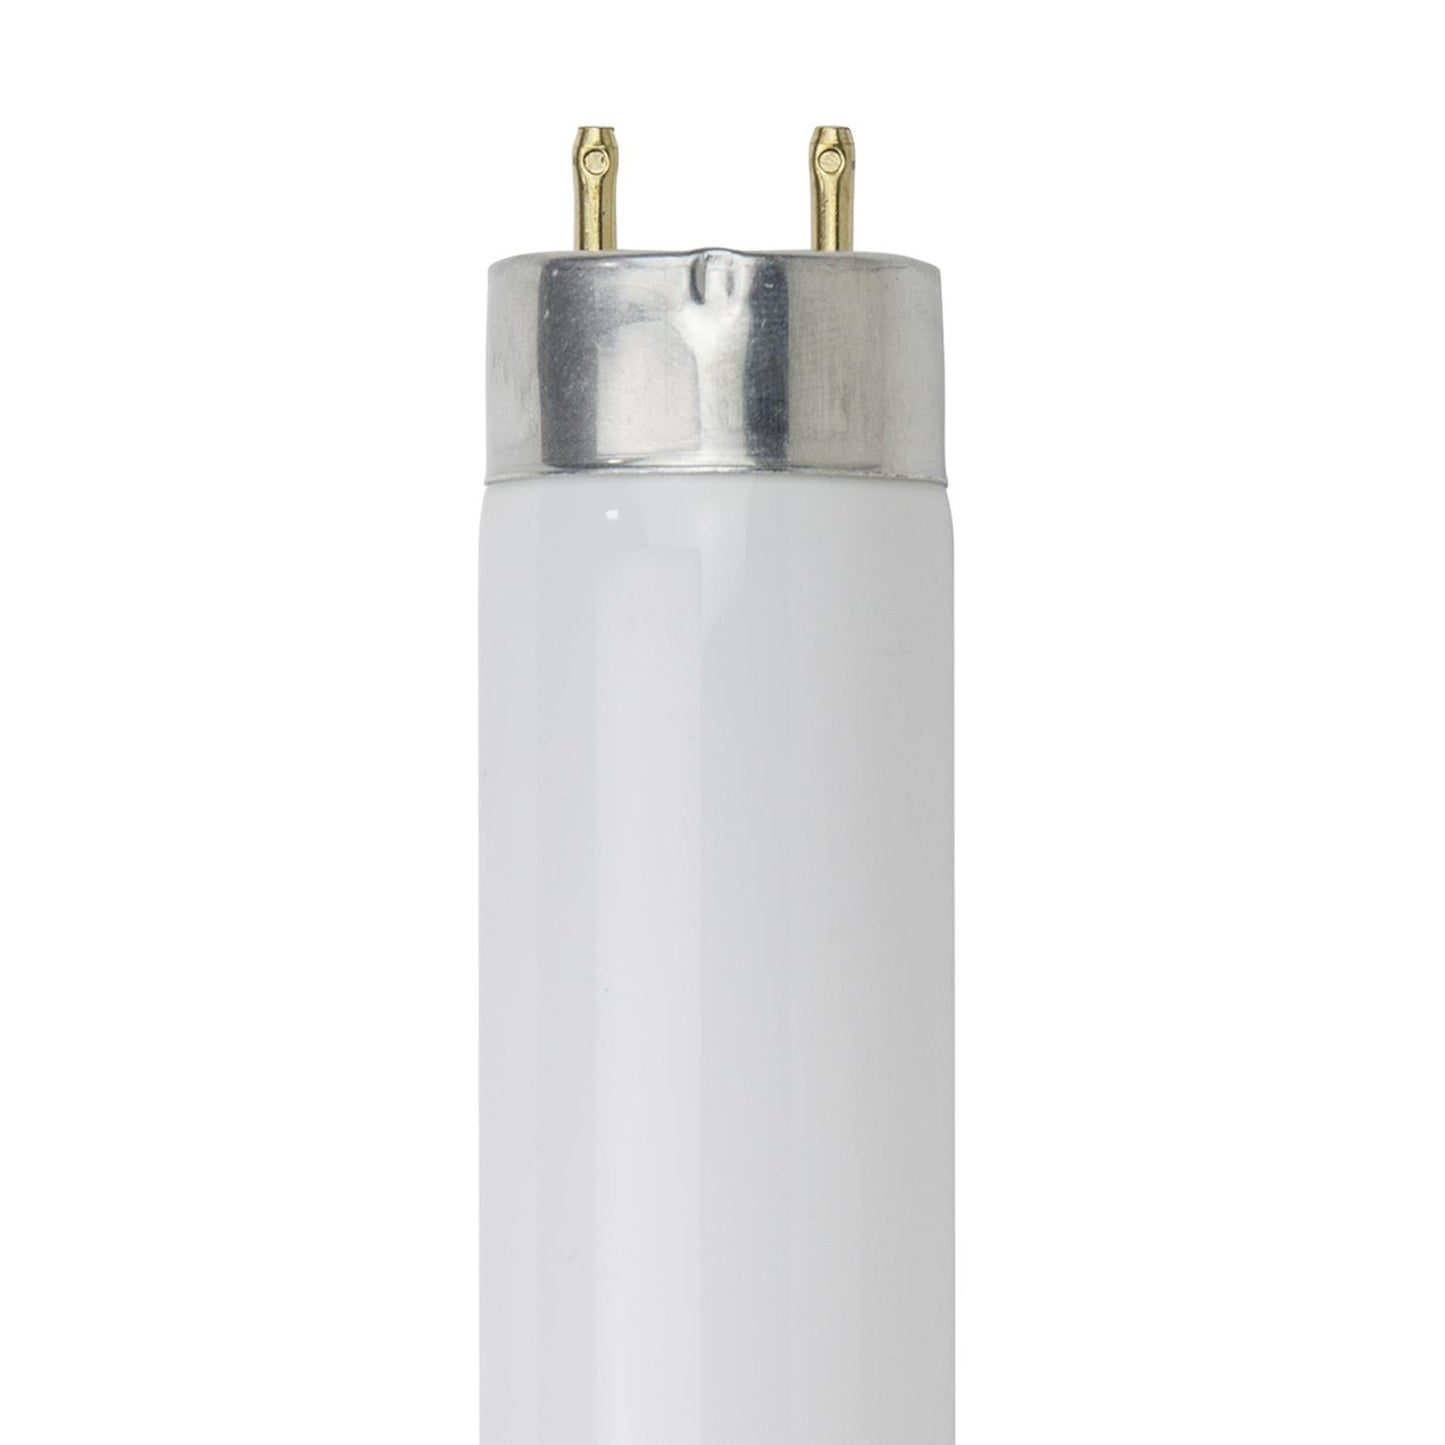 Sunlite F32T8/HL/SP850 32 Watt T8 TUBE Lamp Medium Bi-Pin (G13) Base Super White